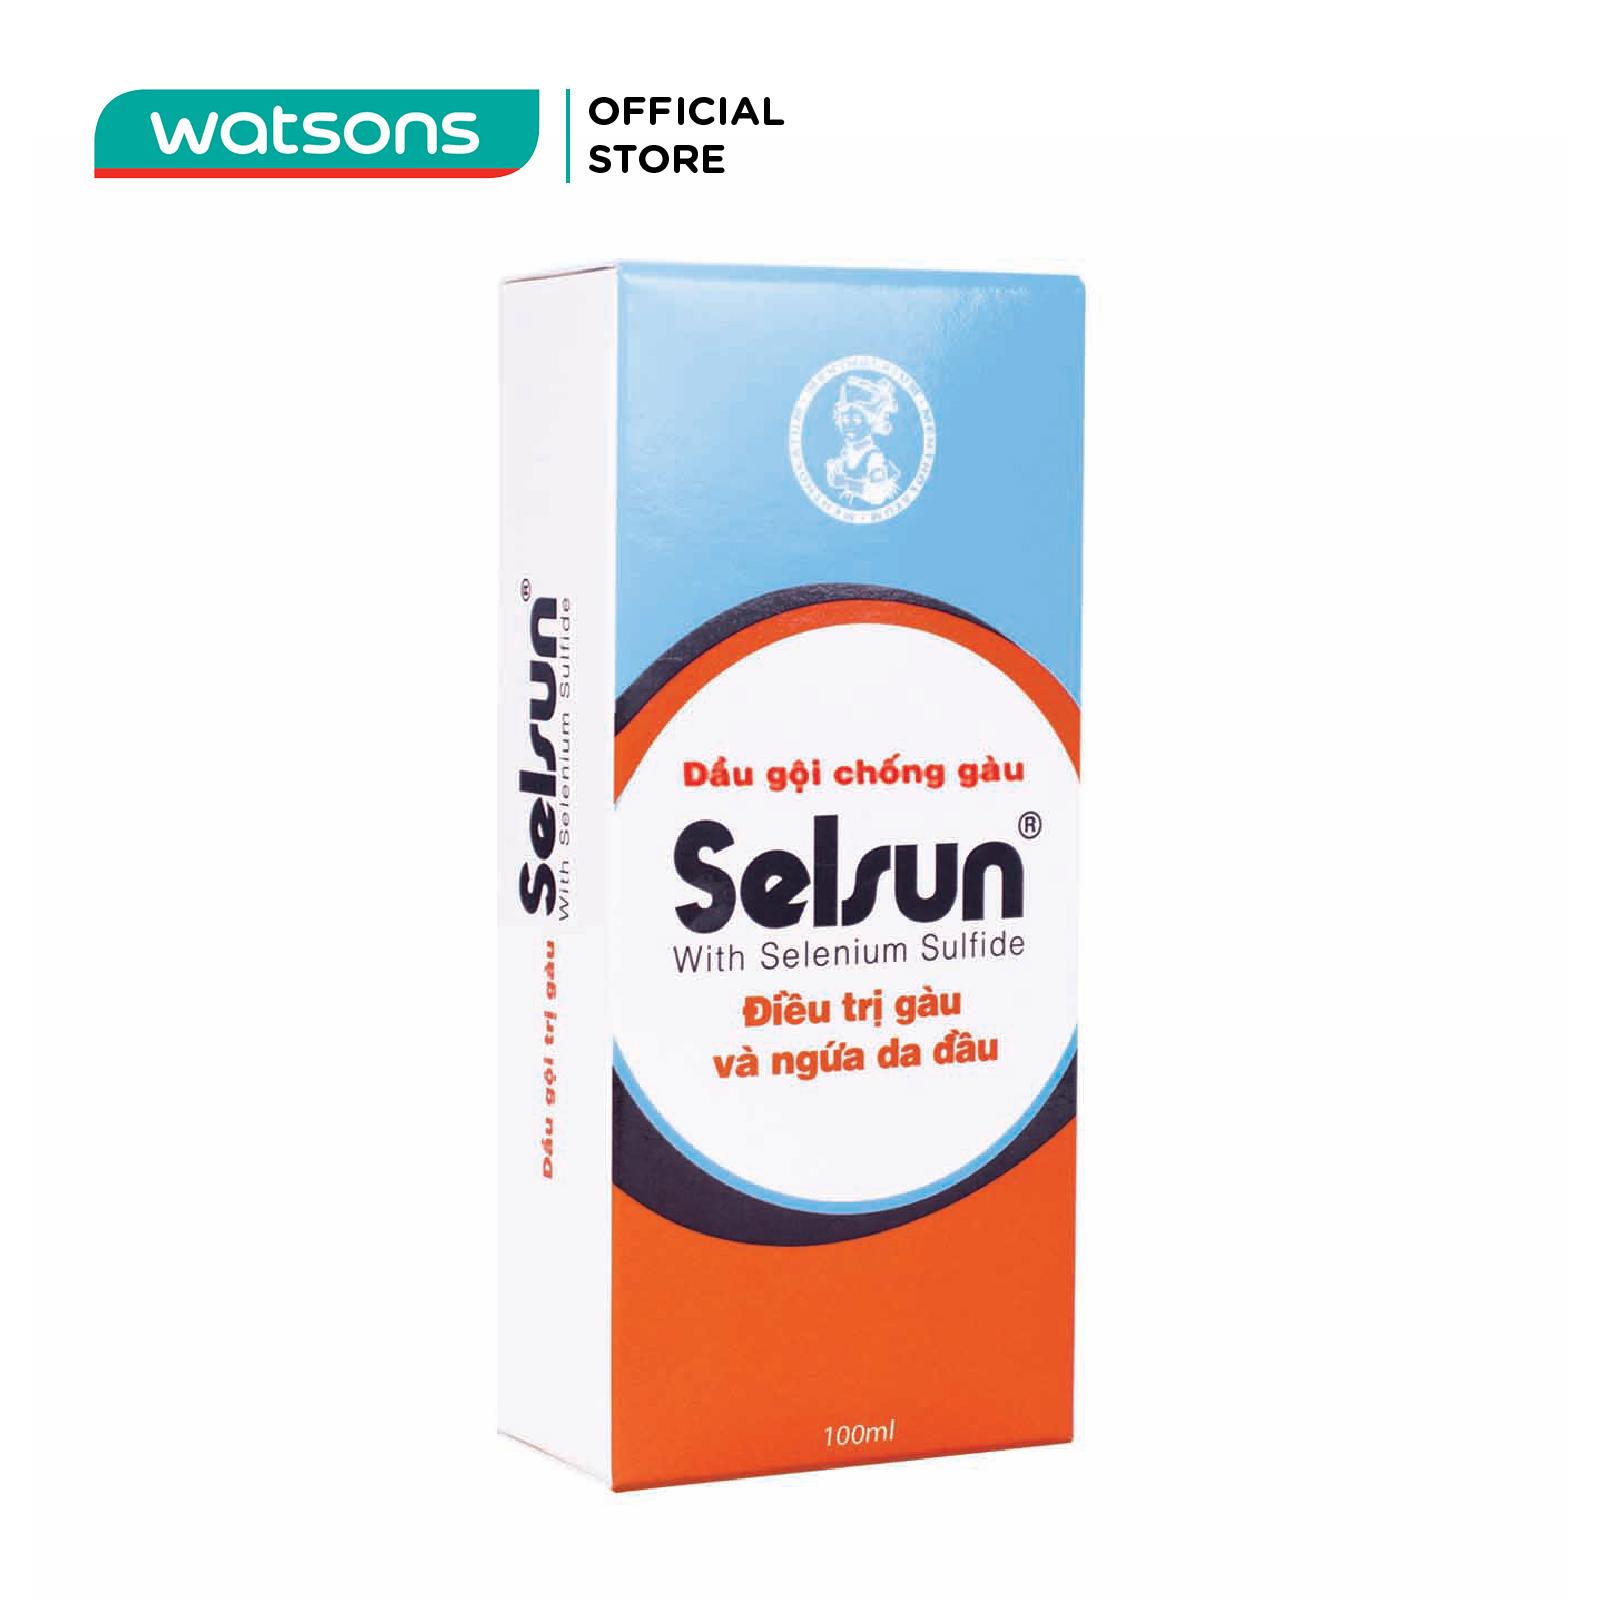 Selsun sản phẩm được người dùng tin tưởng 